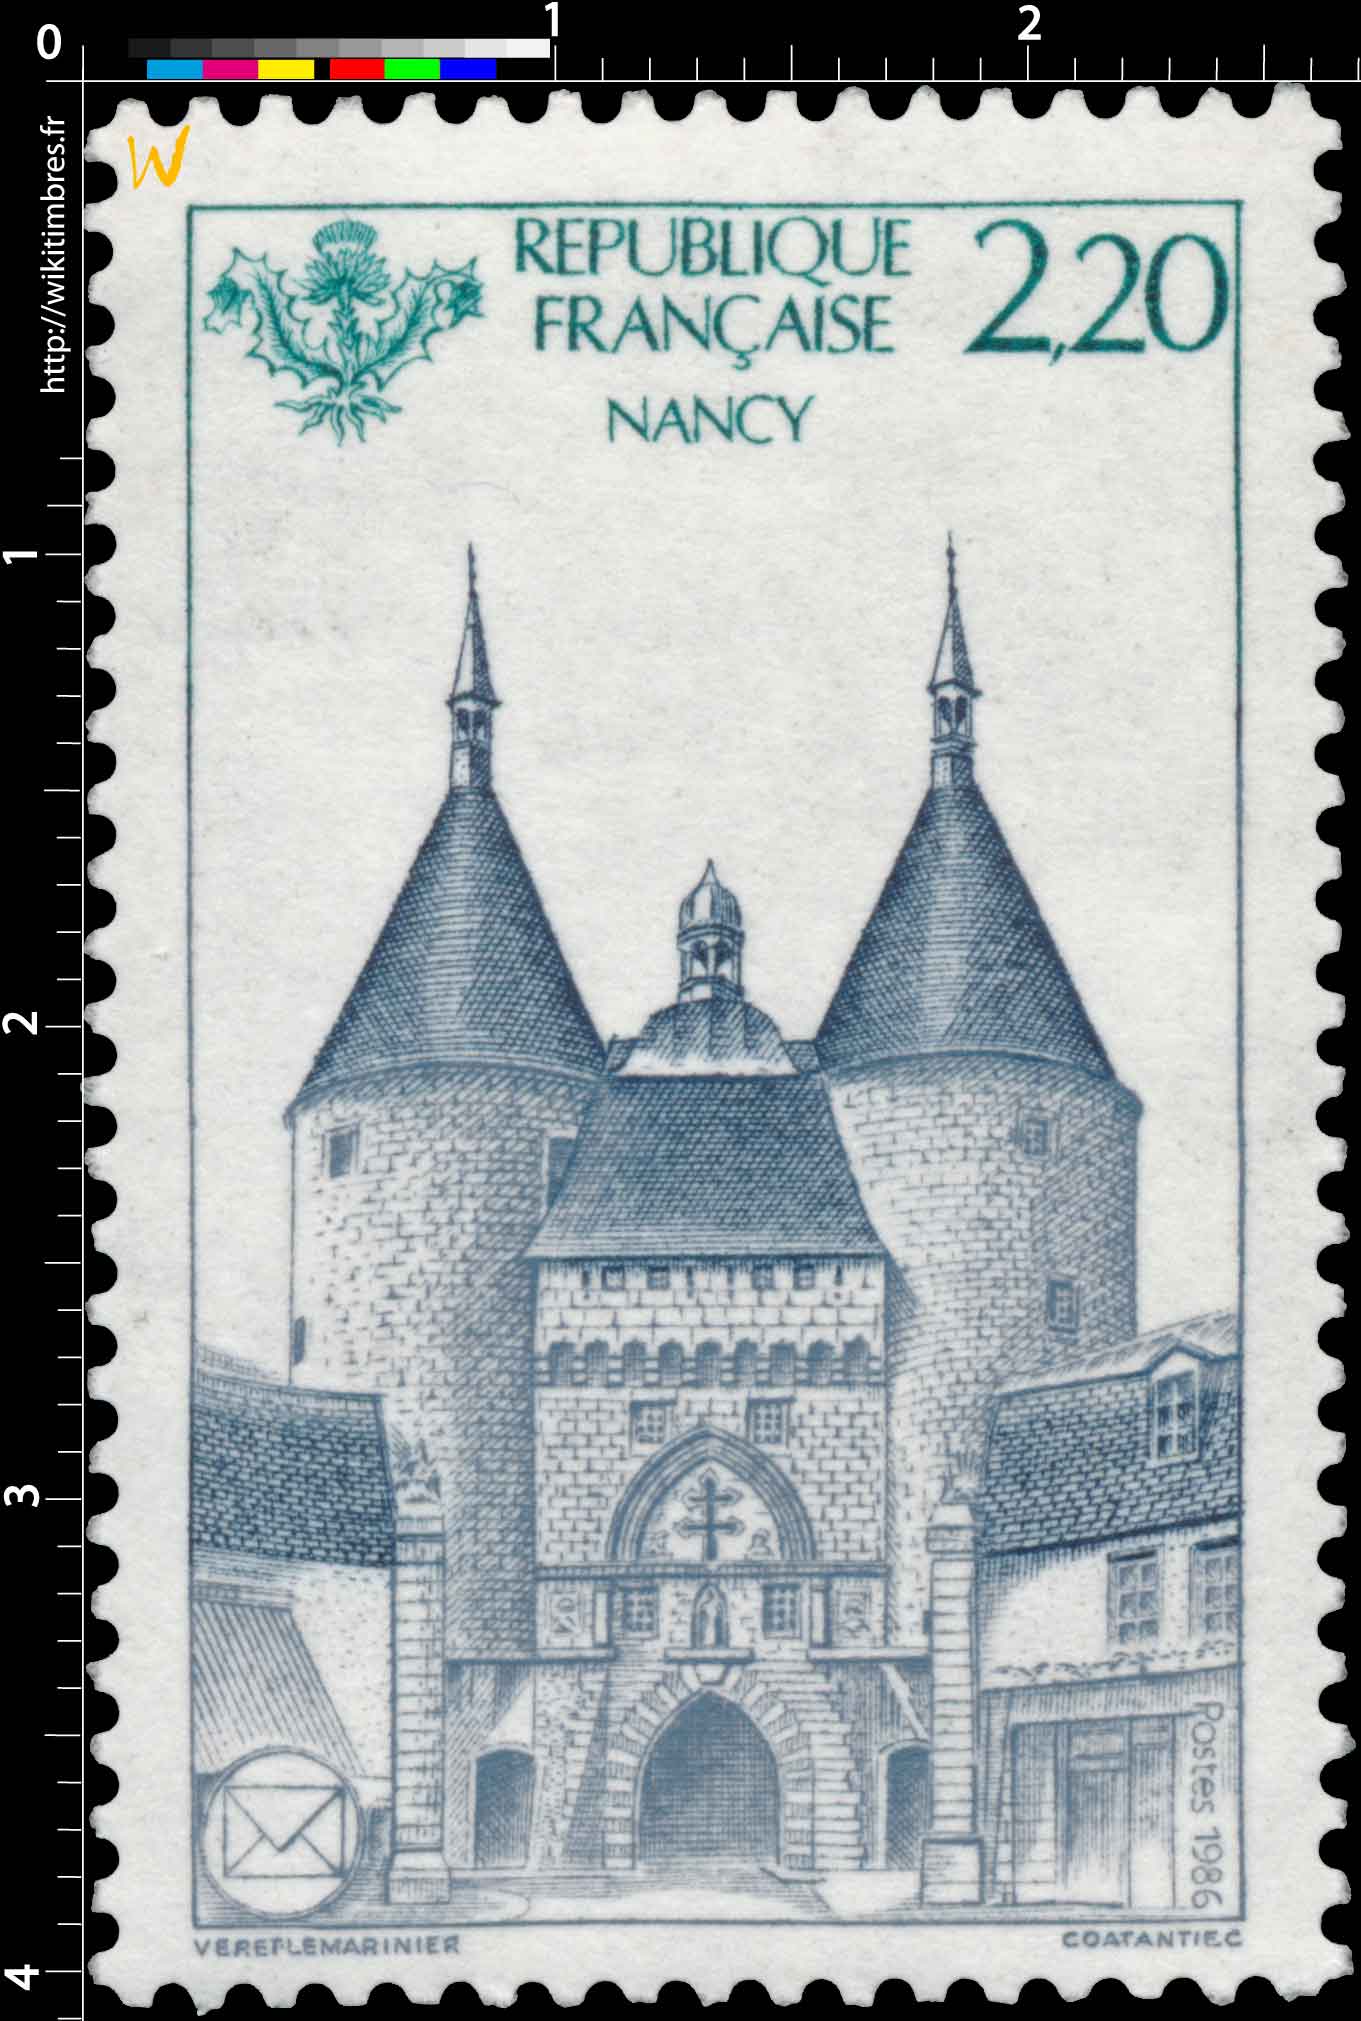 1986 NANCY